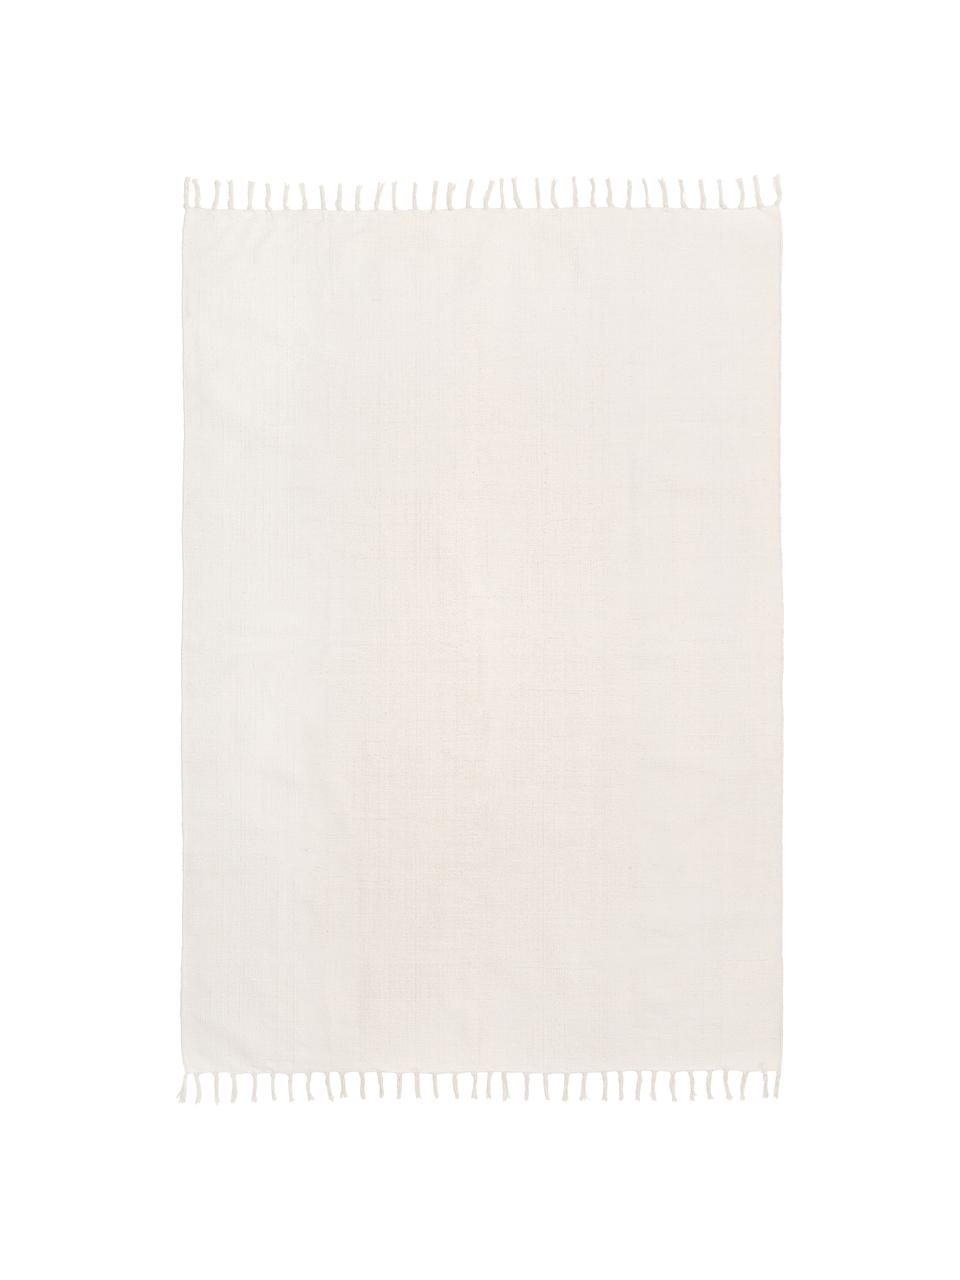 Dünner Baumwollteppich Agneta in Cremeweiß, handgewebt, 100% Baumwolle, Weiß, B 50 x L 80 cm (Größe XXS)